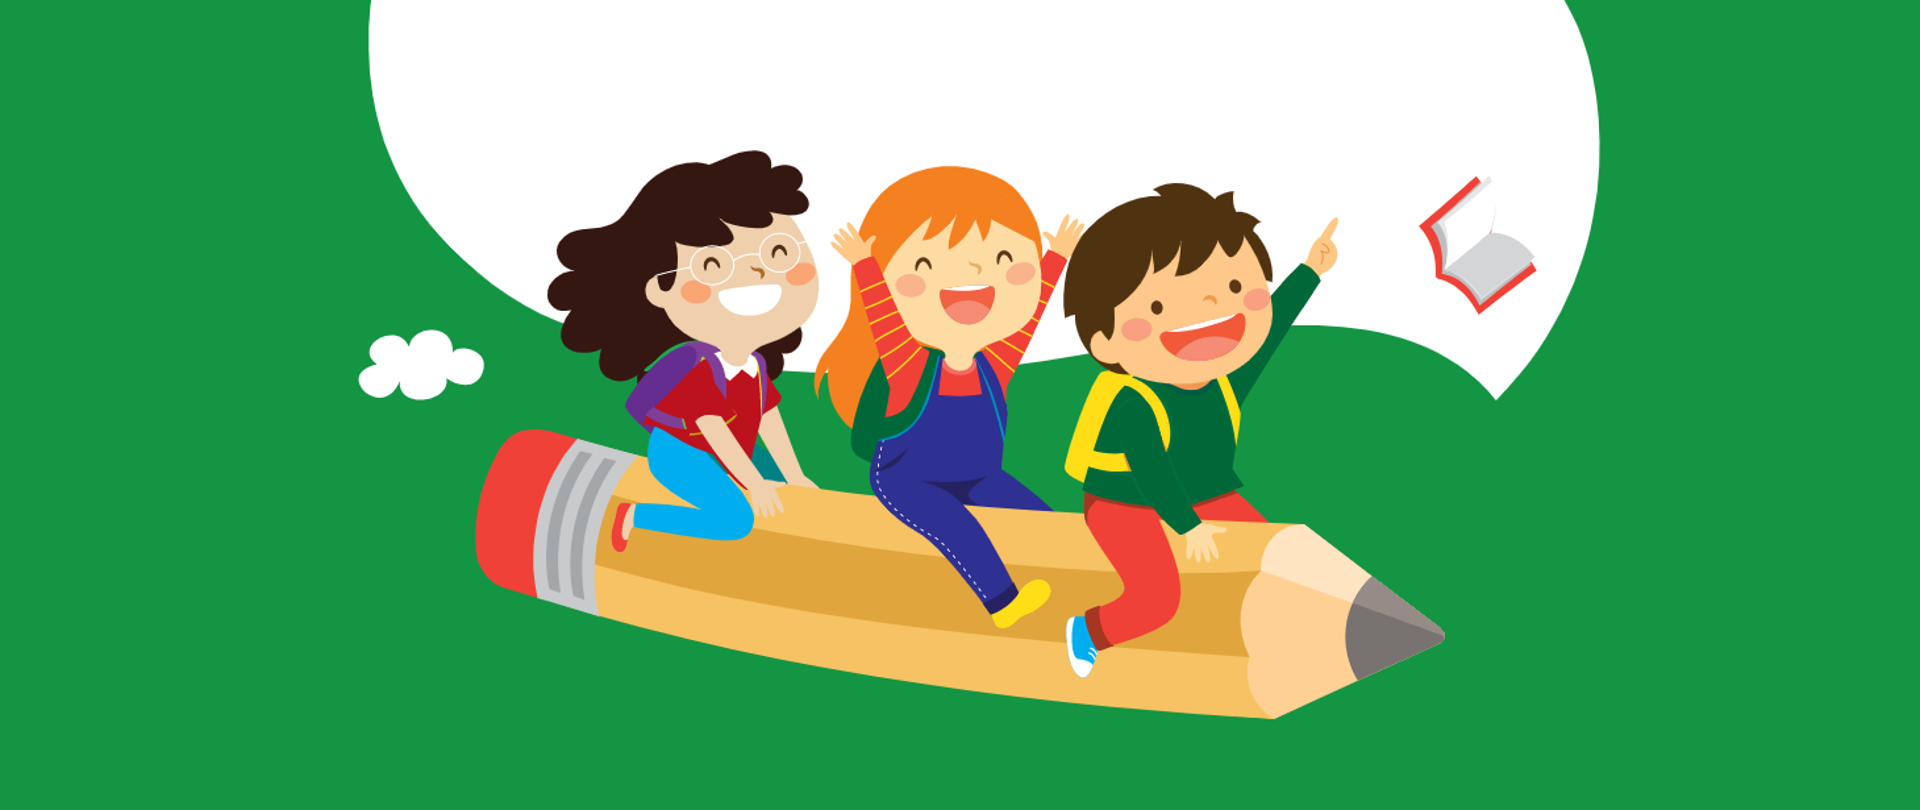 Grafika przedstawiająca trójkę dzieci siedzących na kredce, na zielonym tle